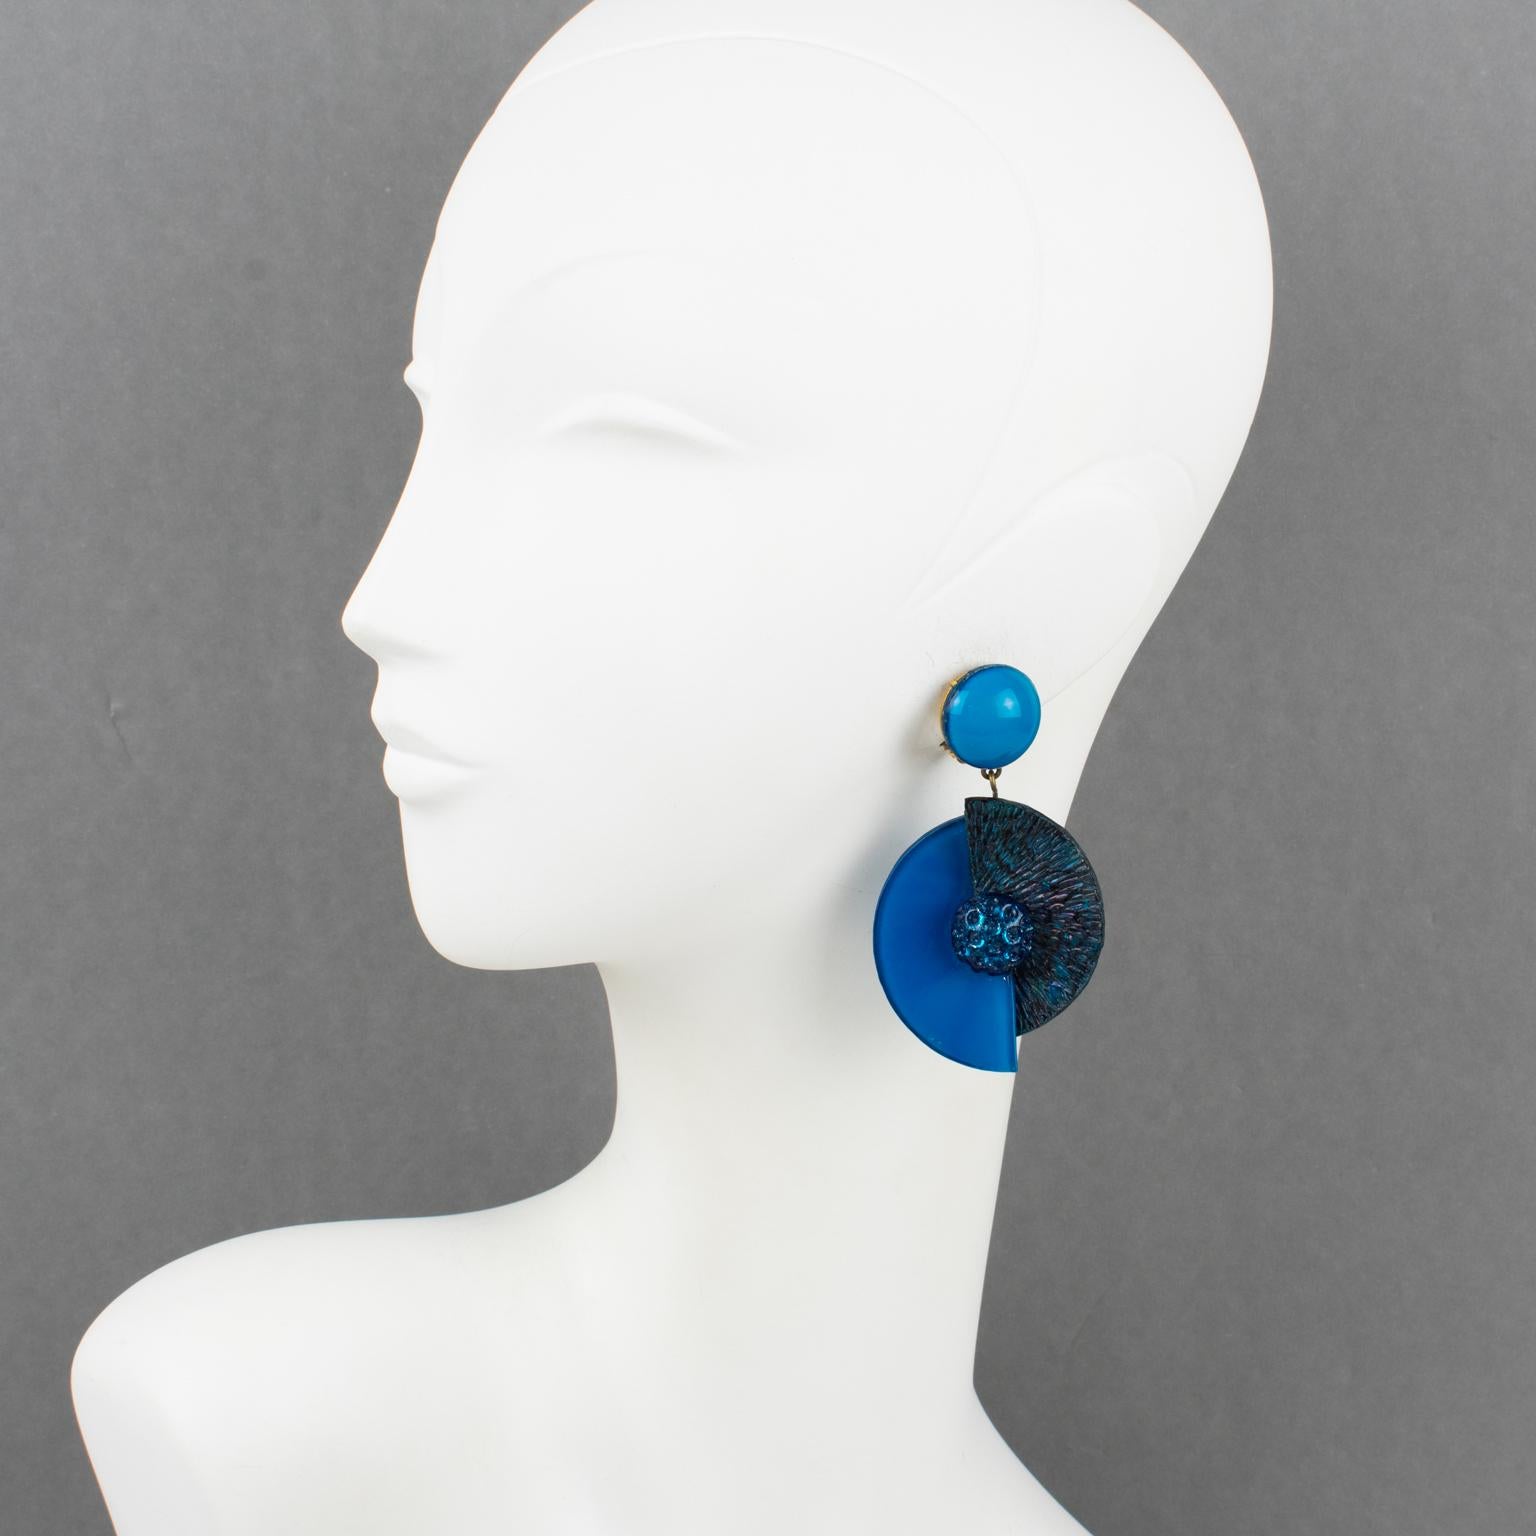 Cilea Paris entwarf diese hübschen dreidimensionalen Ohrringe zum Anstecken. Diese japanisch inspirierten, handgefertigten Ohrringe aus Kunstharz bestehen aus verschiedenen geometrischen Fächerformen mit strukturierten Mustern, die sich zu einem